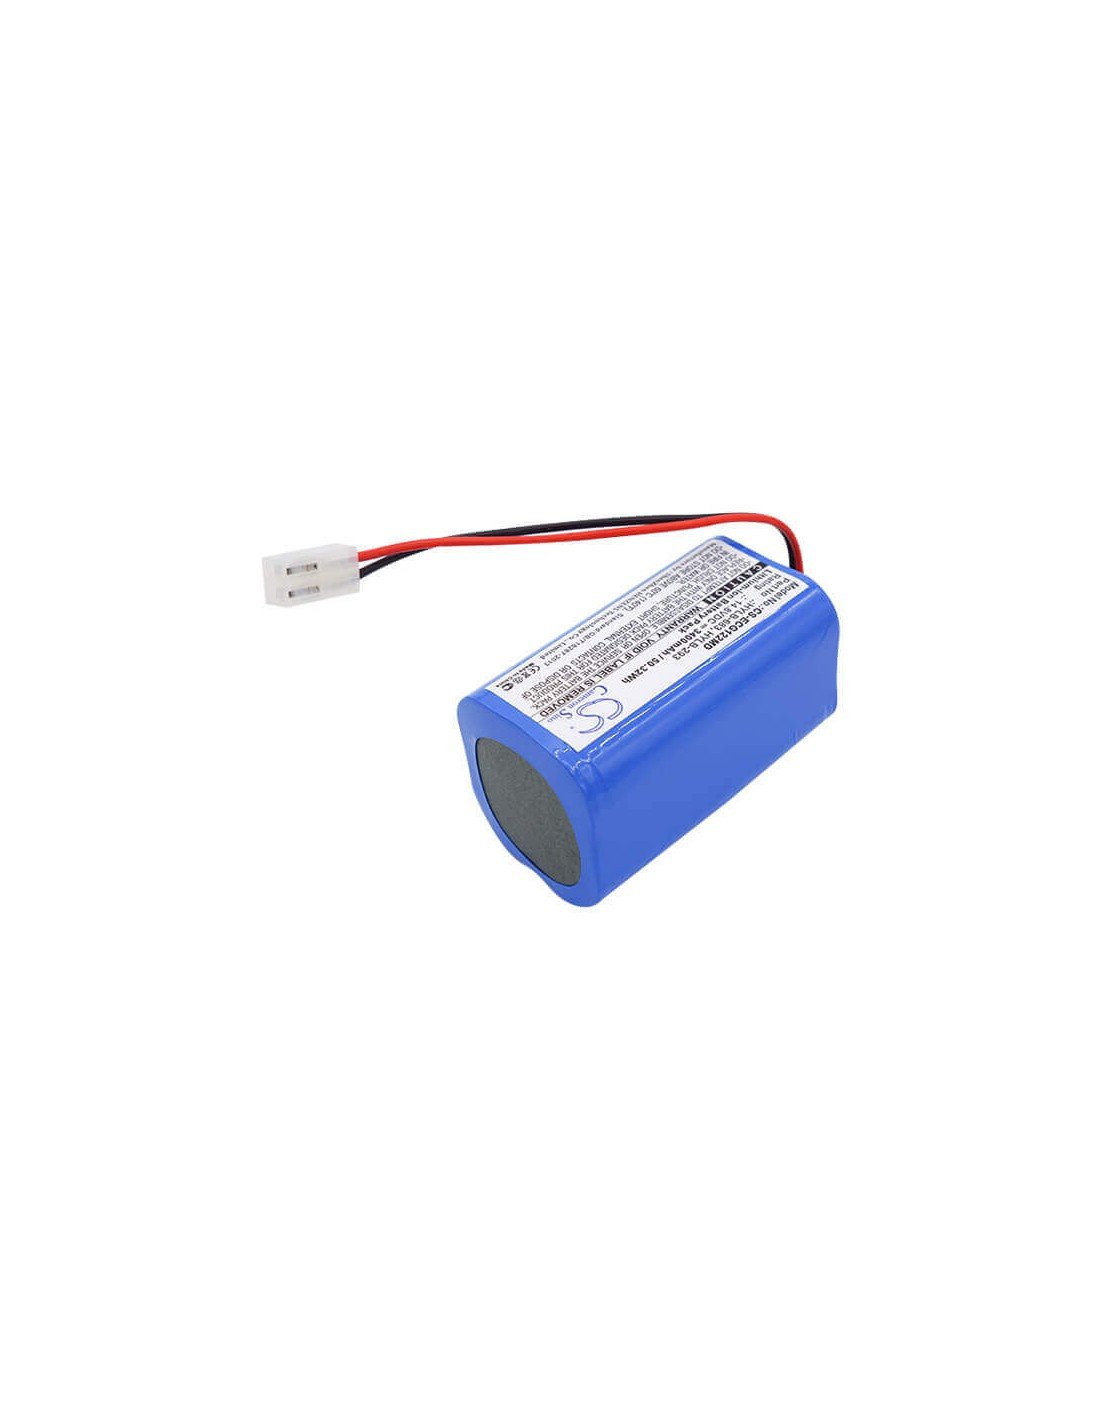 Battery for Biocare, Ecg-1200, Ecg-1210 14.8V, 3400mAh - 50.32Wh